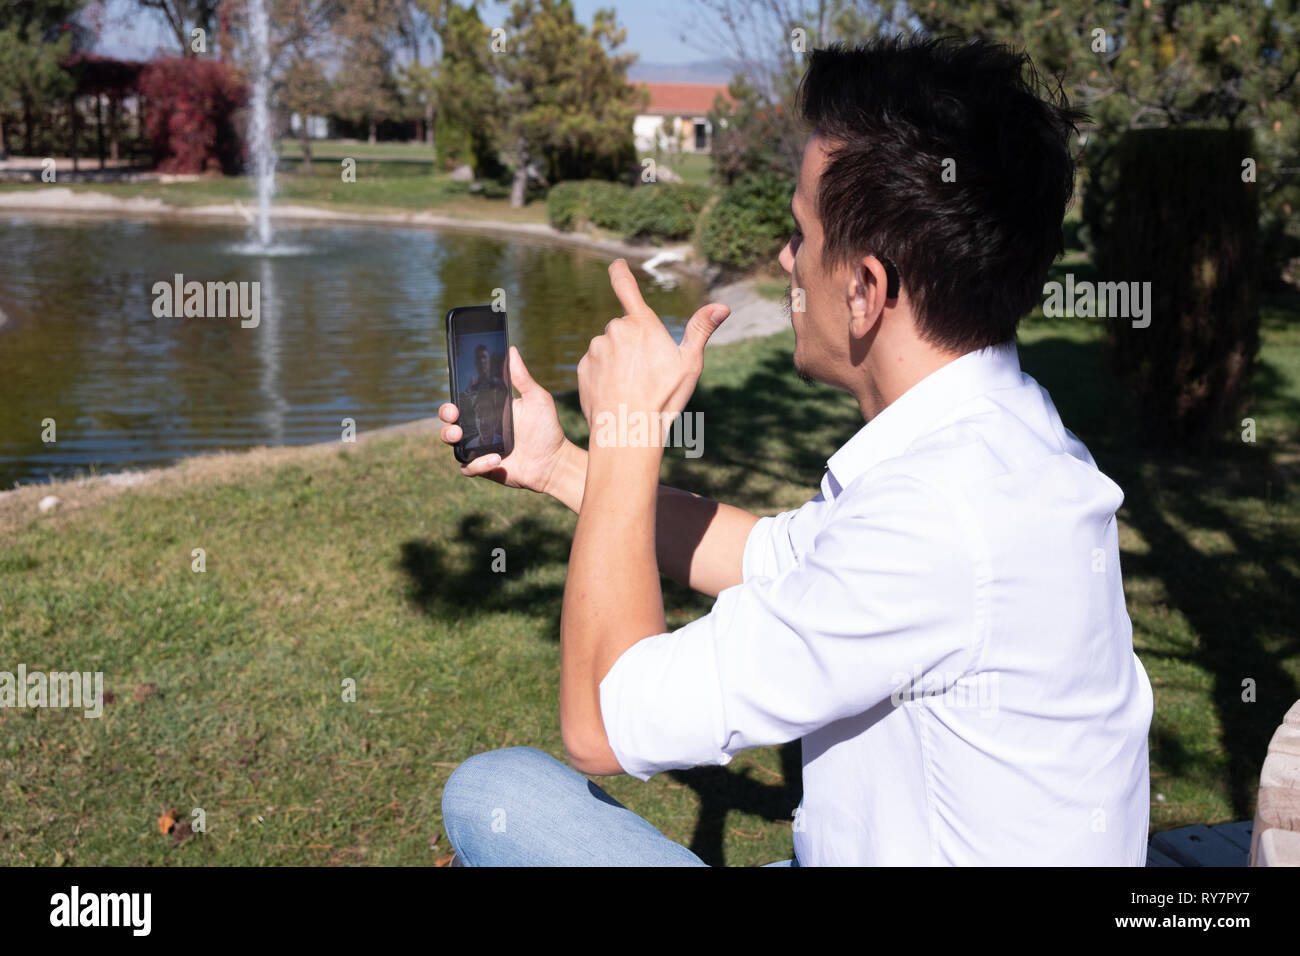 Junge mit Gebärdensprache an smart phone Kommunikation Stockfoto